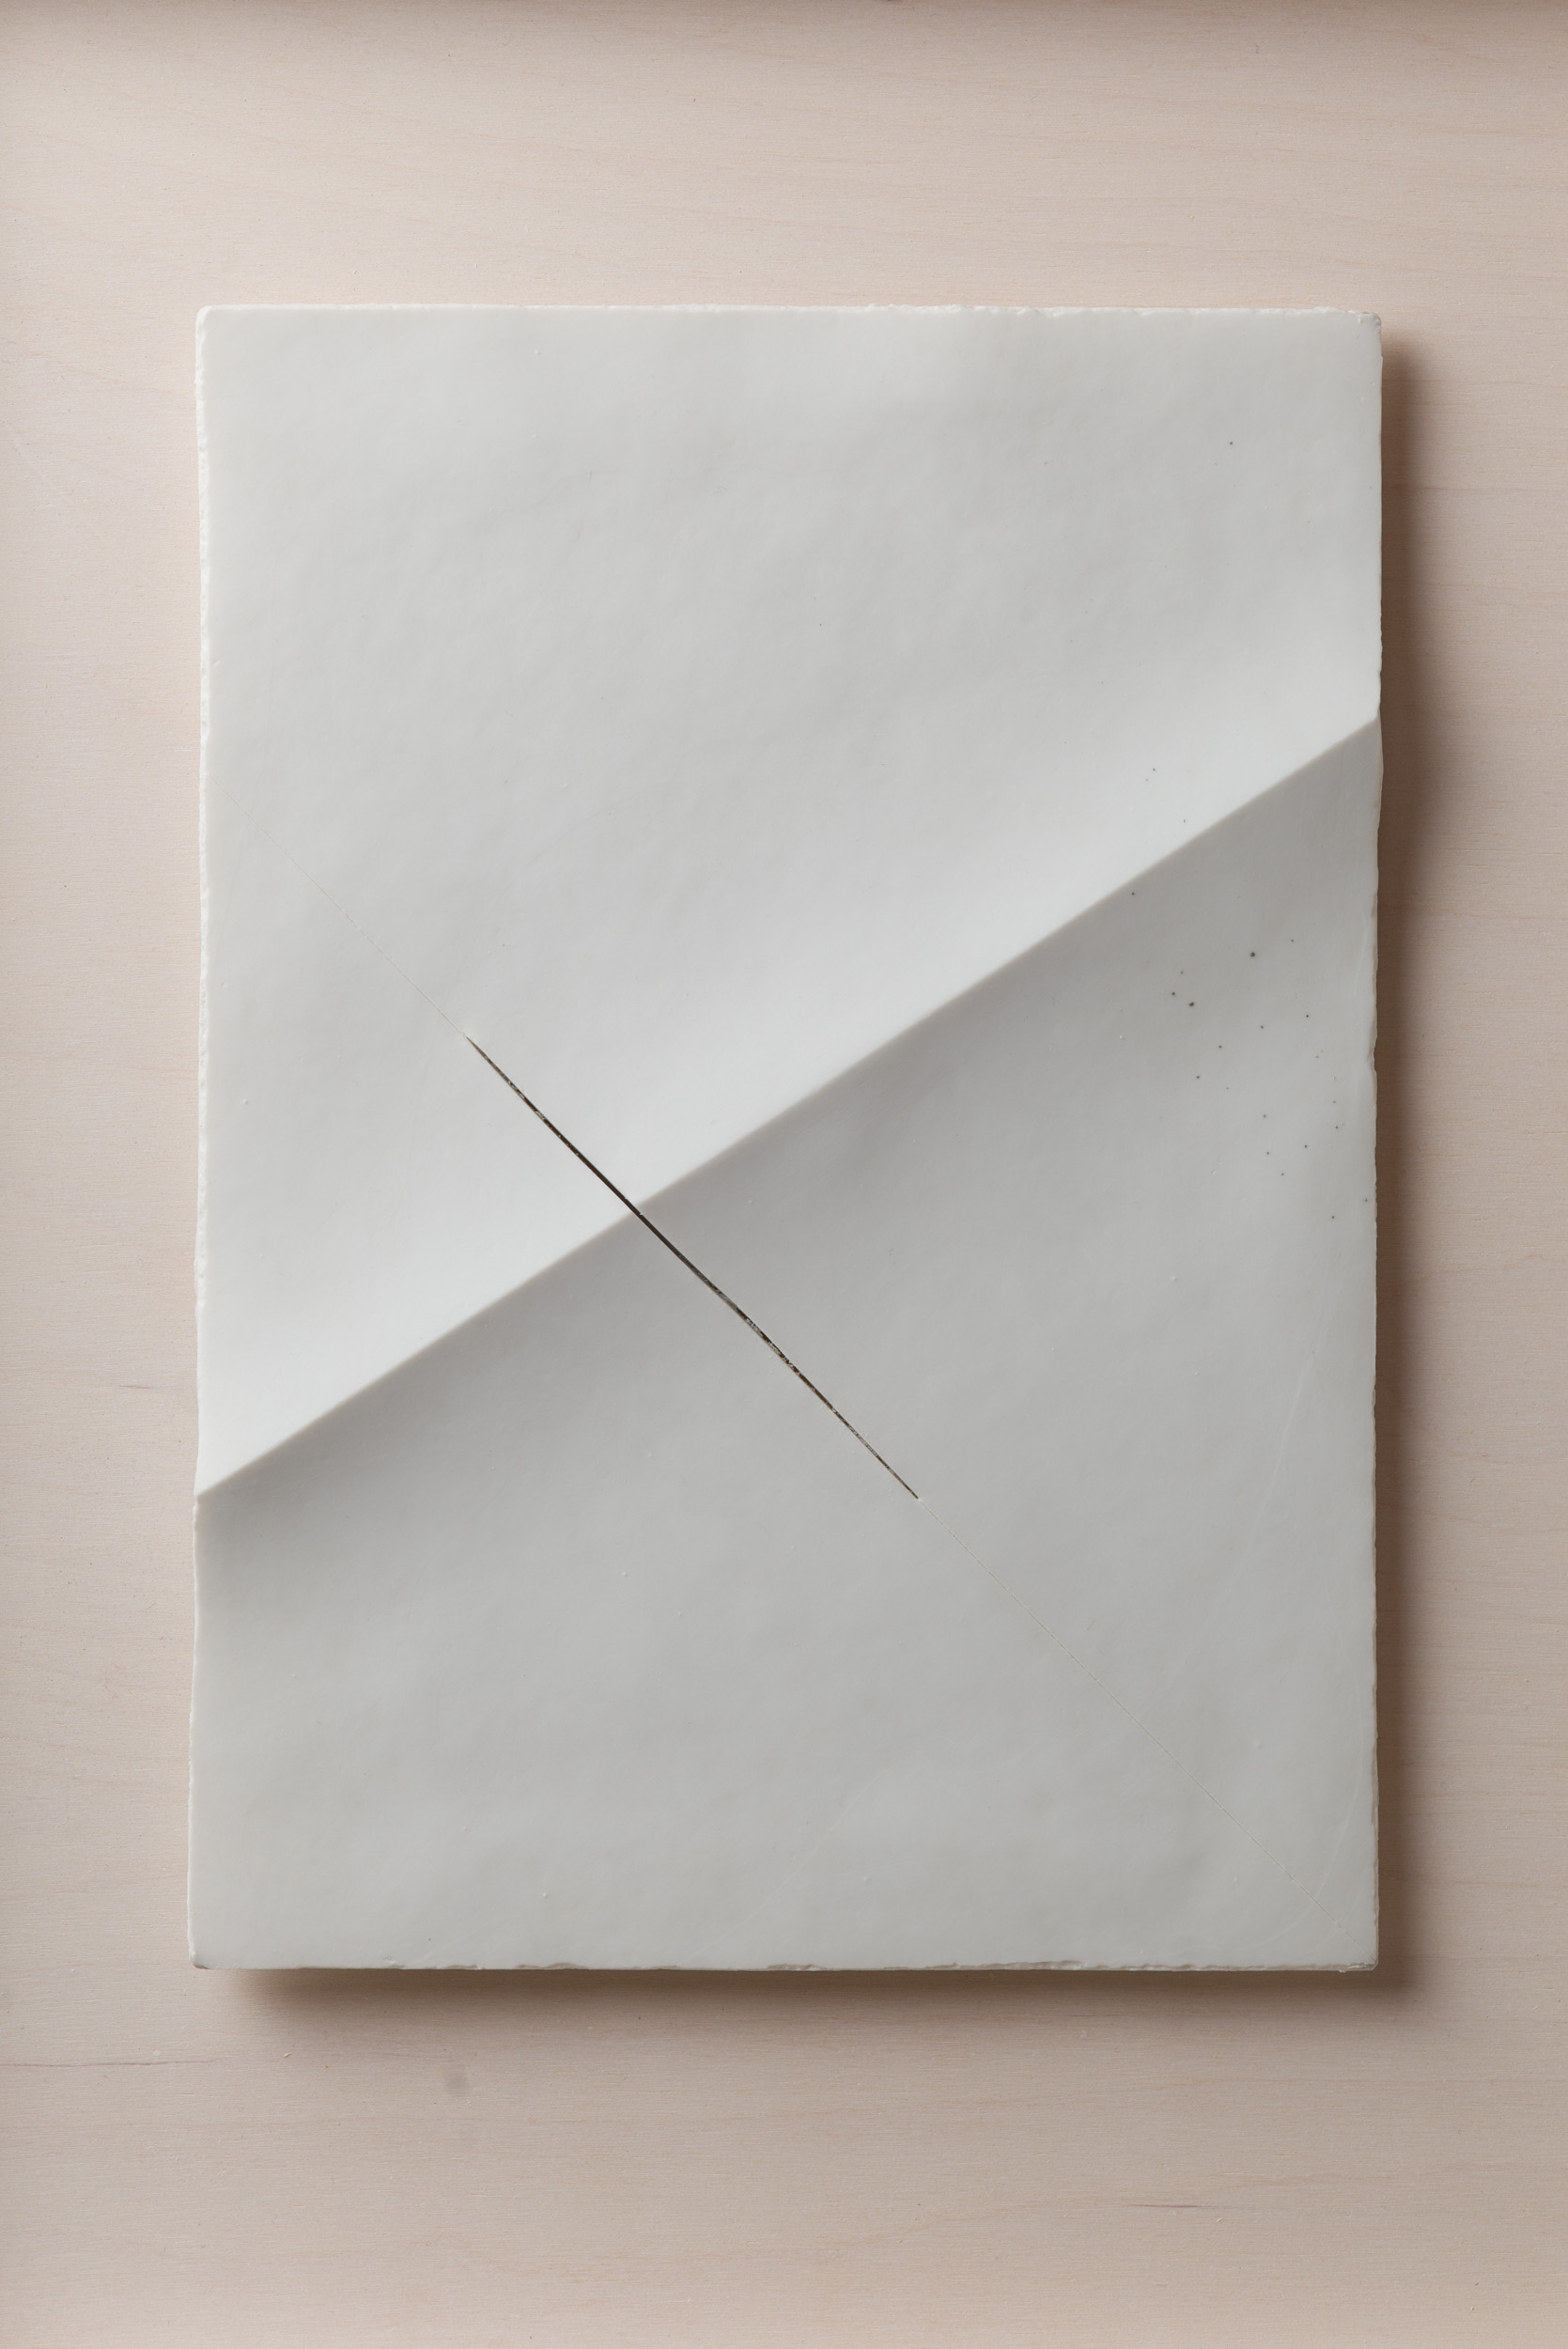 NÉMA Júlia: A4 I/II (2019) papírporcelán / paperporcelain 18 x 26 cm (31,6 x 38,6 x 3,5 cm) fotó: Czigány Ákos